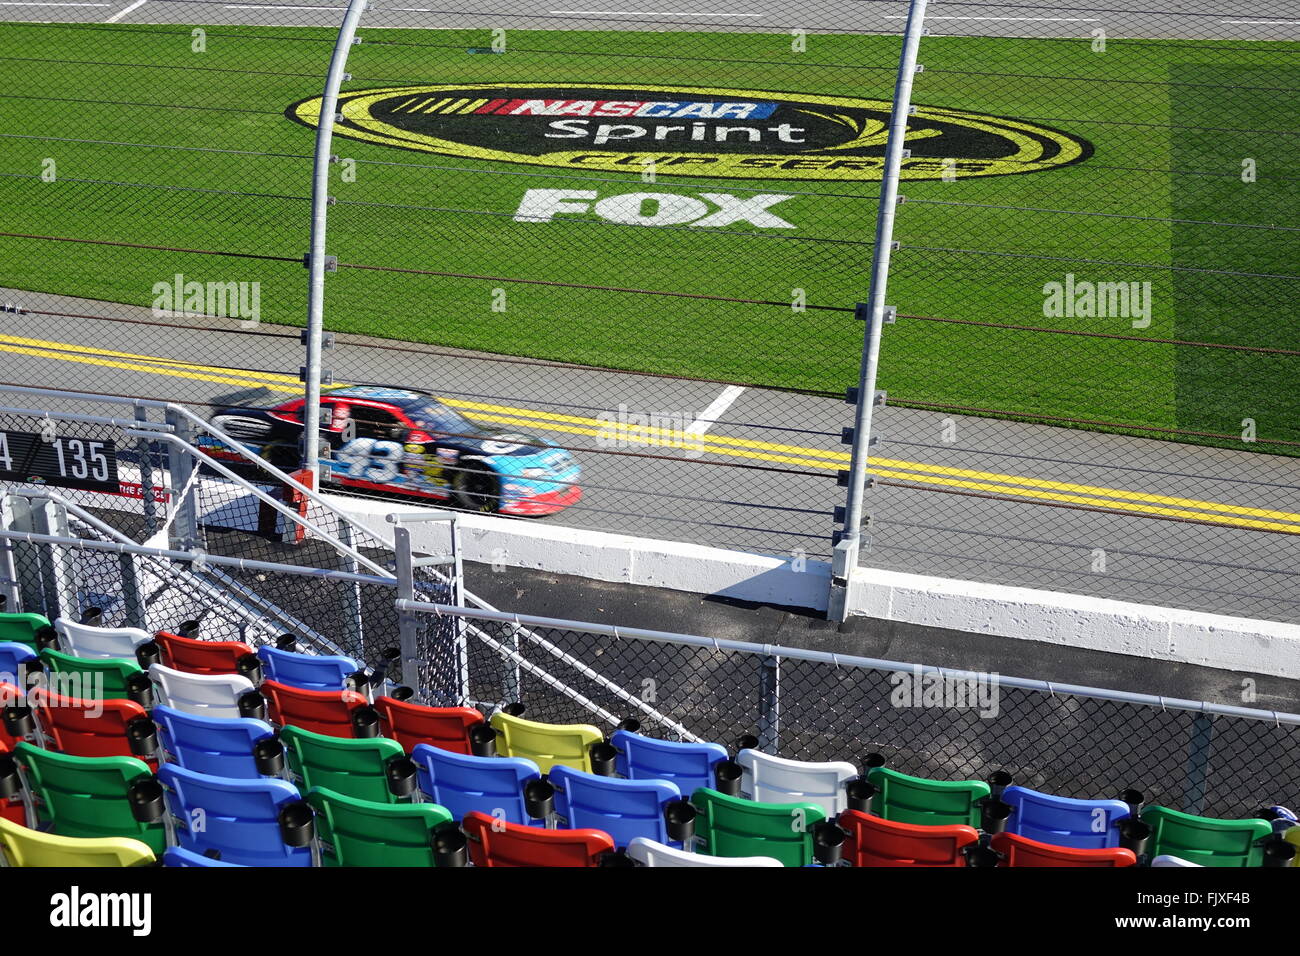 Daytona International Speedway Sitze, Track, Rasenfläche mit Zeichen für Nascar Sprint Cup Series, Fox. Zoomen durch während der Rennwagen Stockfoto